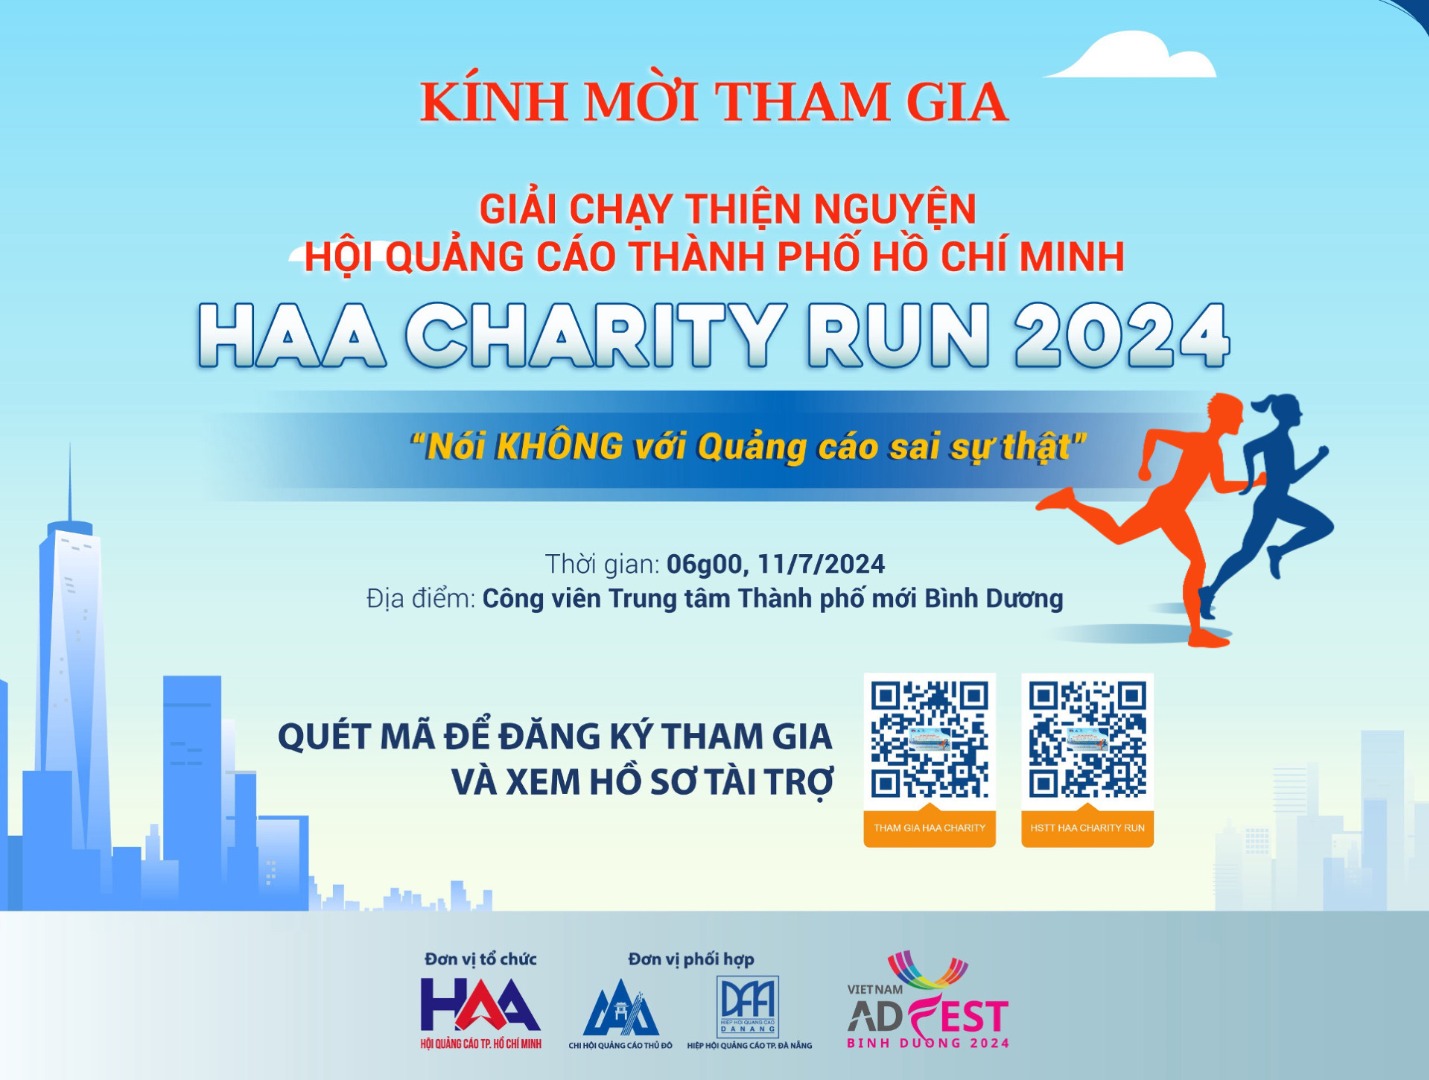 Mời tham gia “Giải chạy thiện nguyện HAA CHARITY RUN 2024: NÓI...